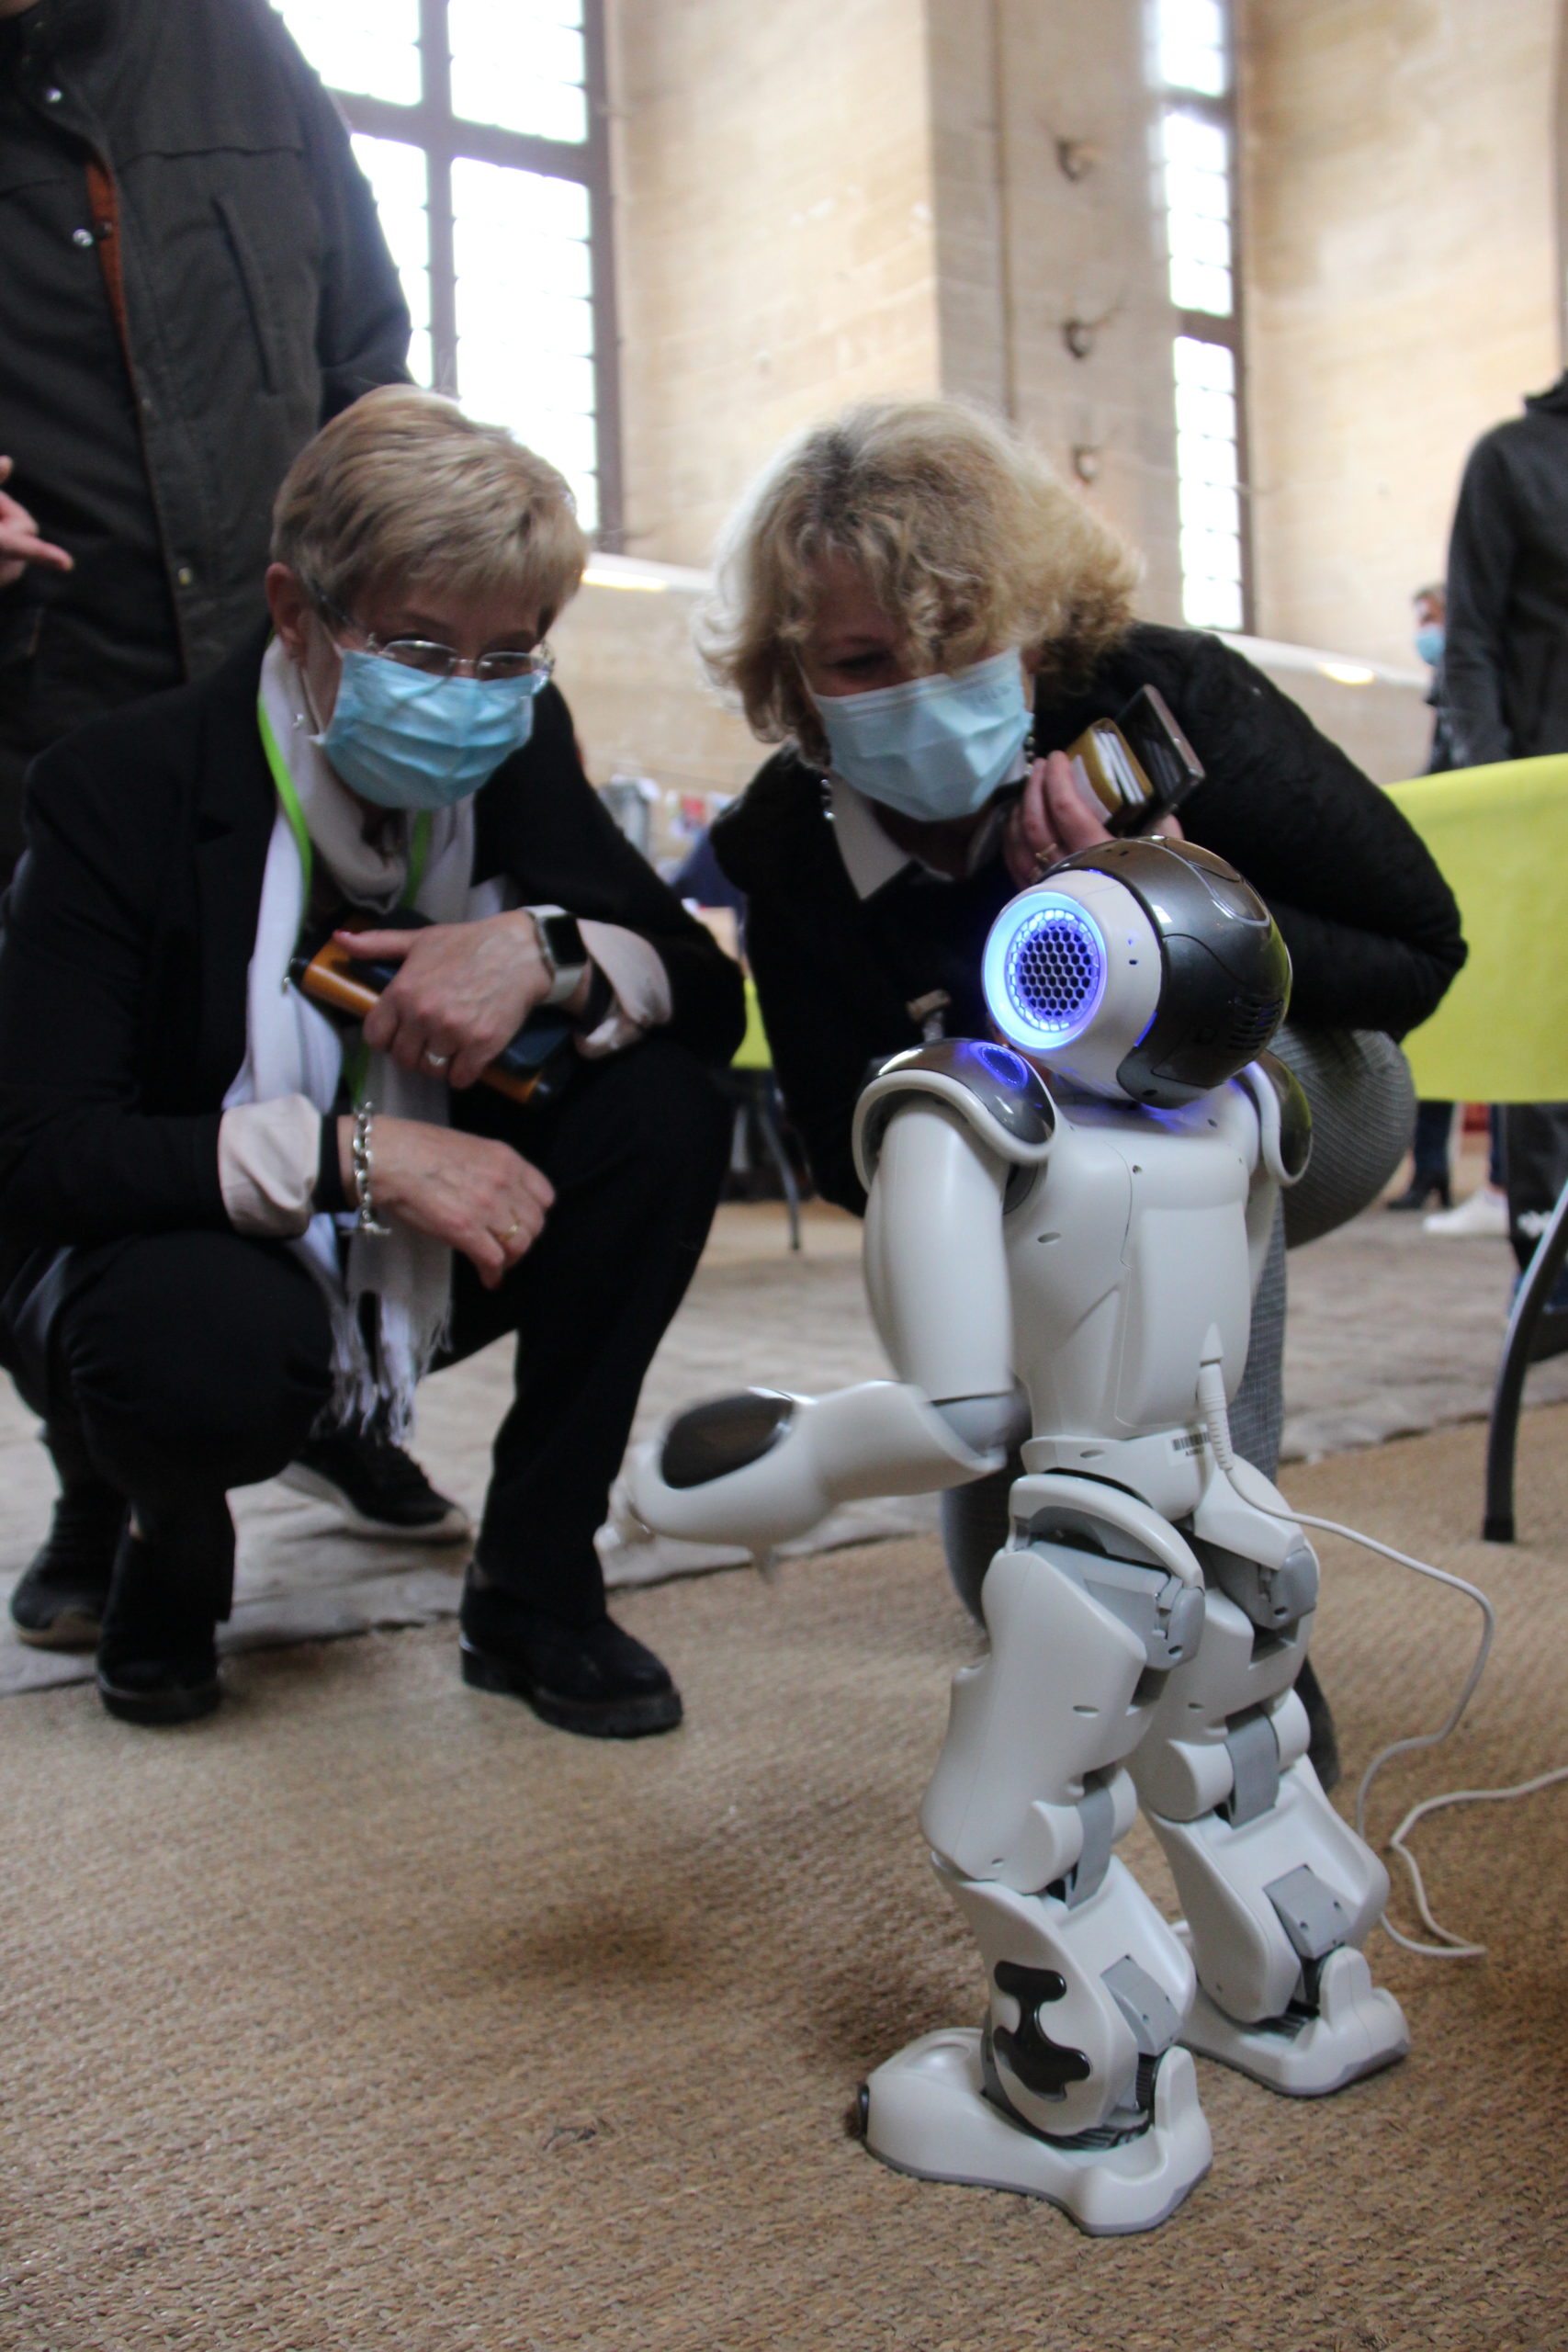 journée festive au château de Chantilly - la présidente et la directrice générale font la rencontre avec Nao, le robot interactif